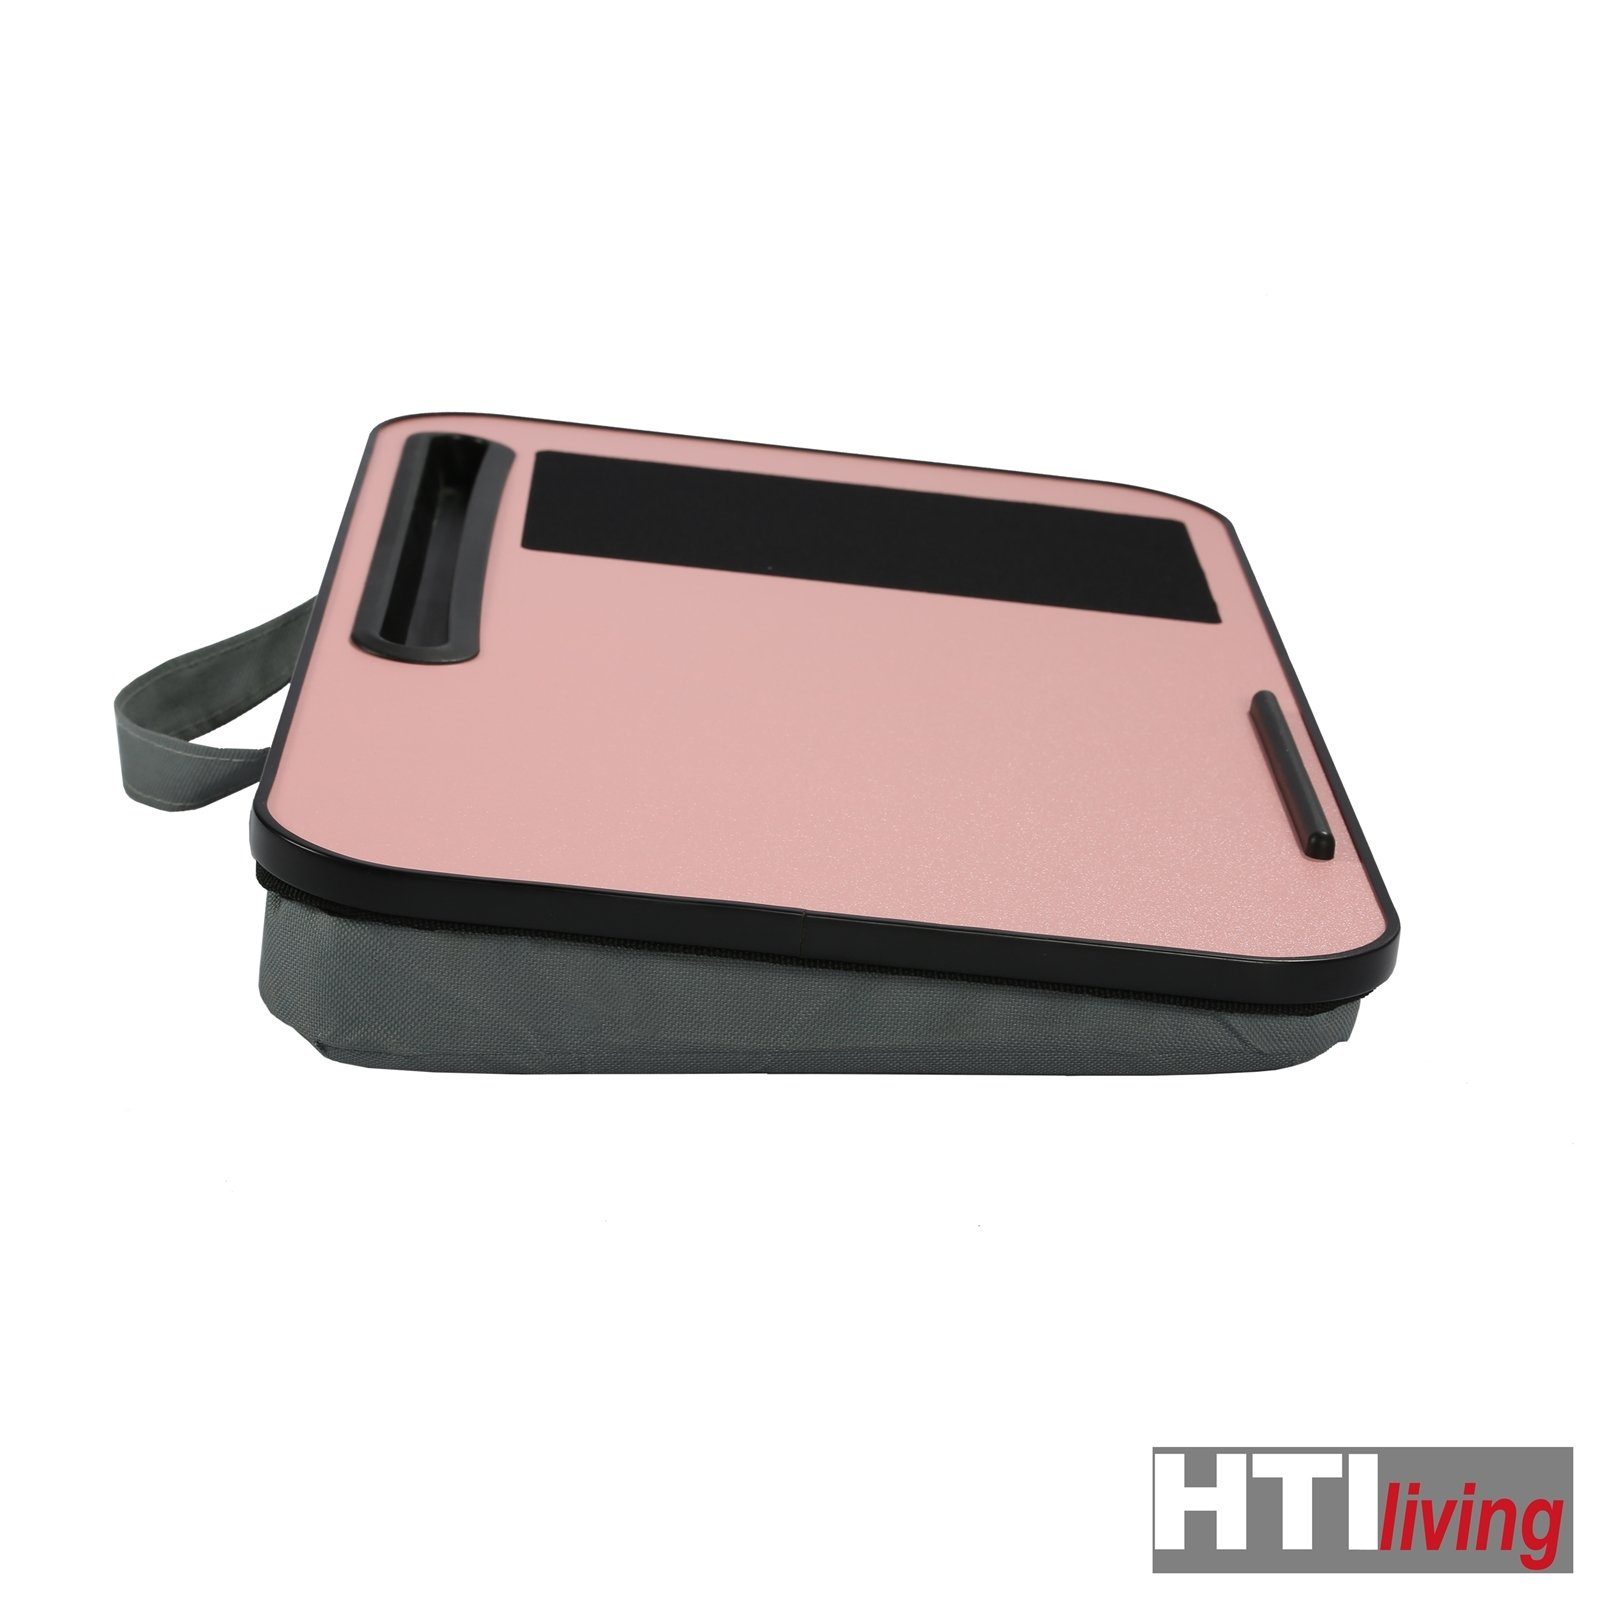 Laptoptisch Pink Laptoptisch HTI-Living Sansa, Laptoptisch